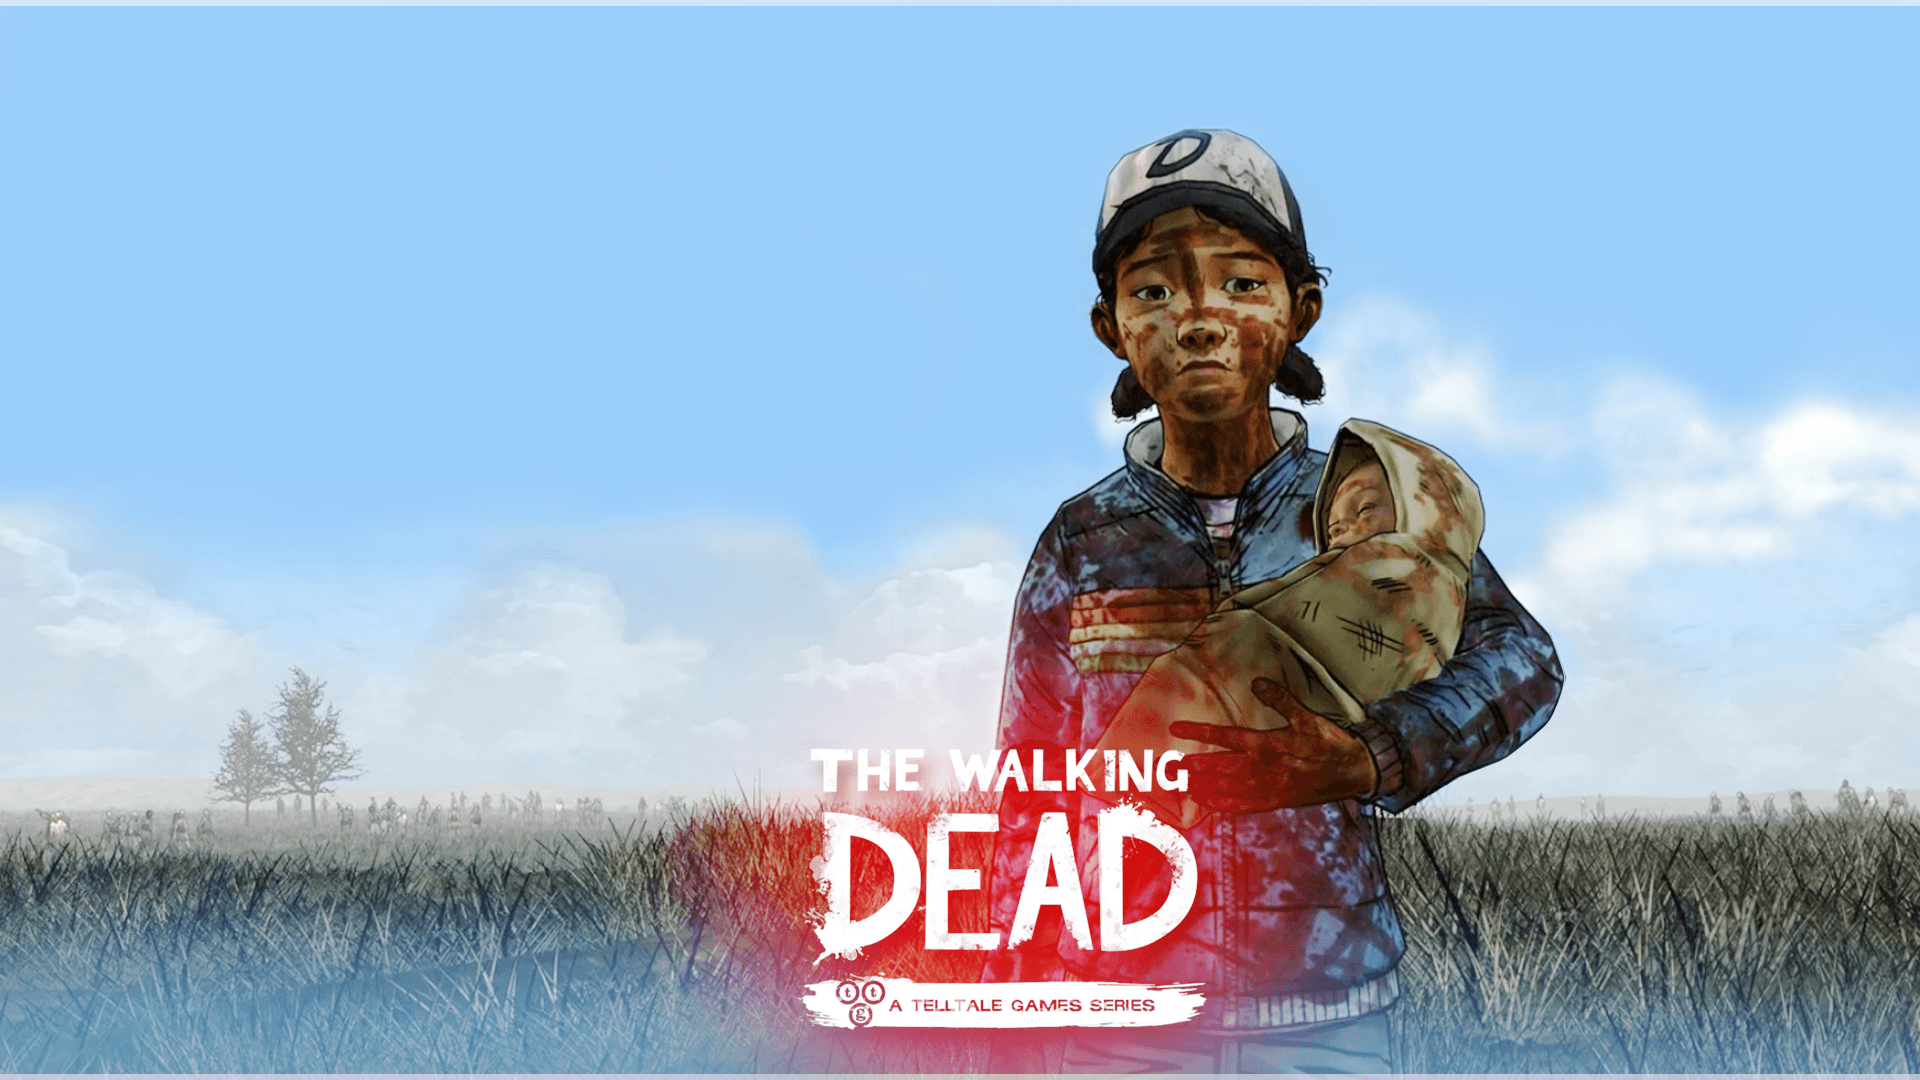 The Walking Dead Season 2 Wallpaper Going Back